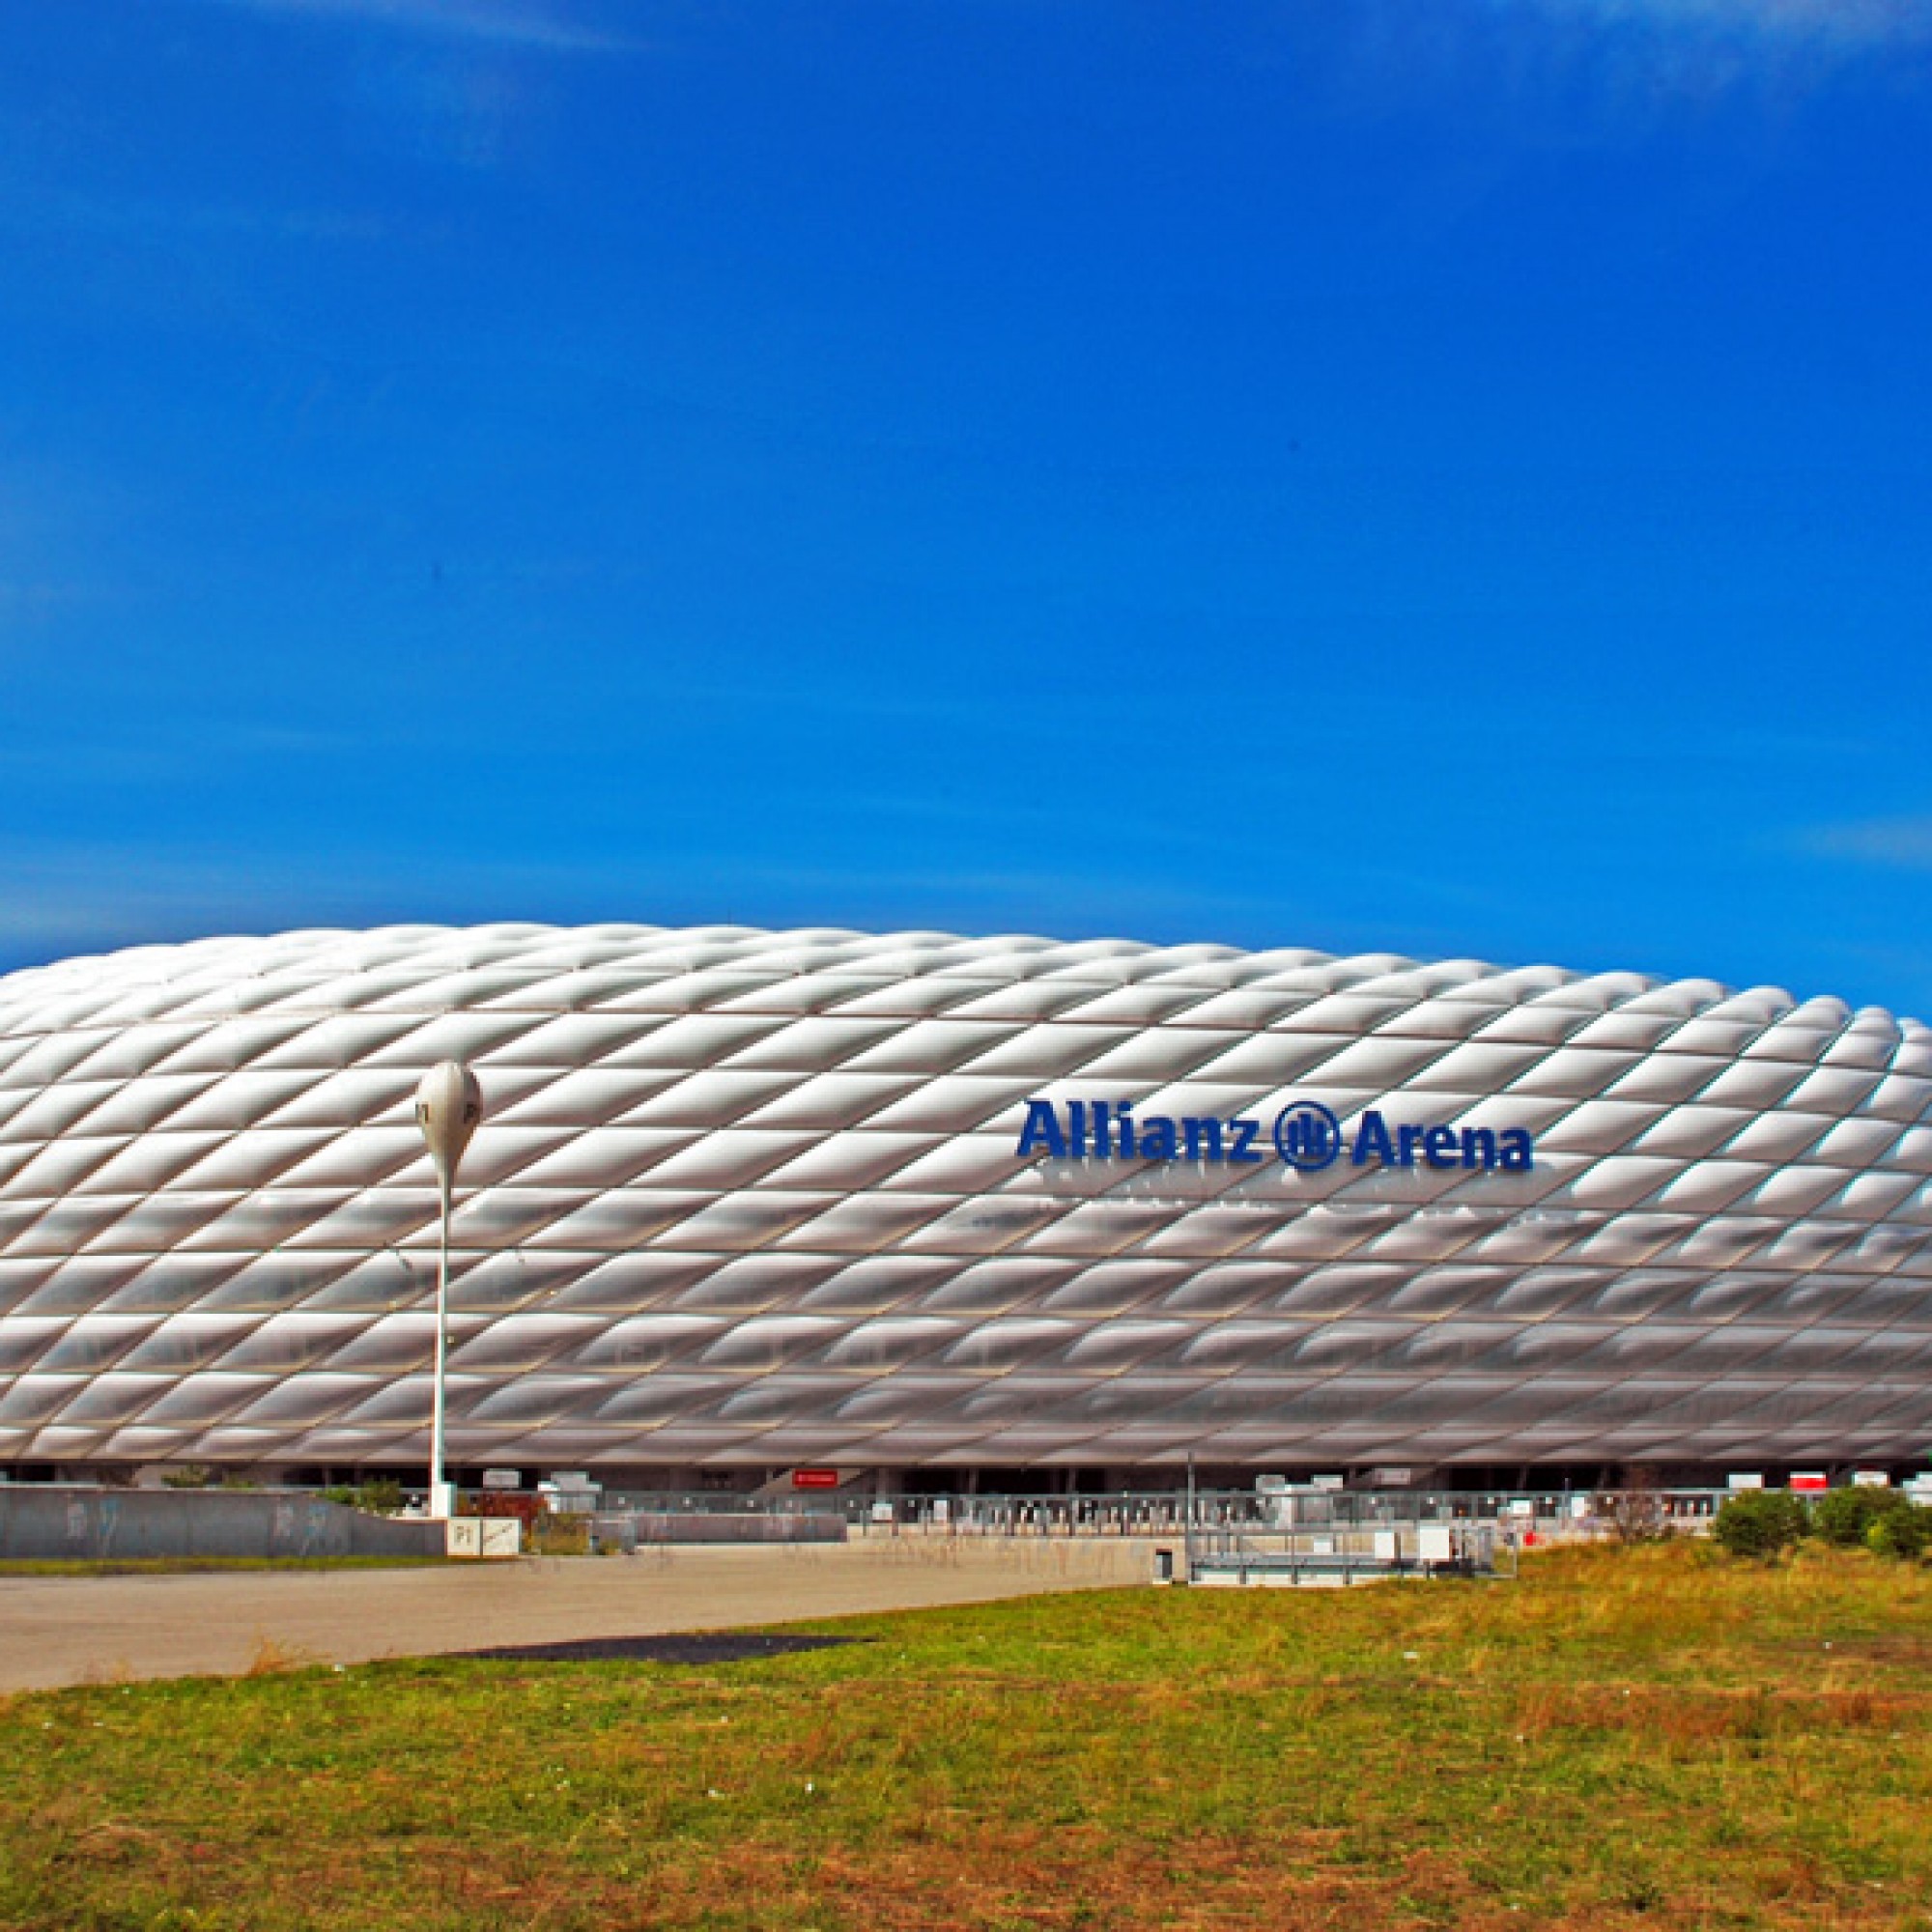 Die Allianz-Arena in München 2010 (wikimedia.org, Guido Radig, CC)